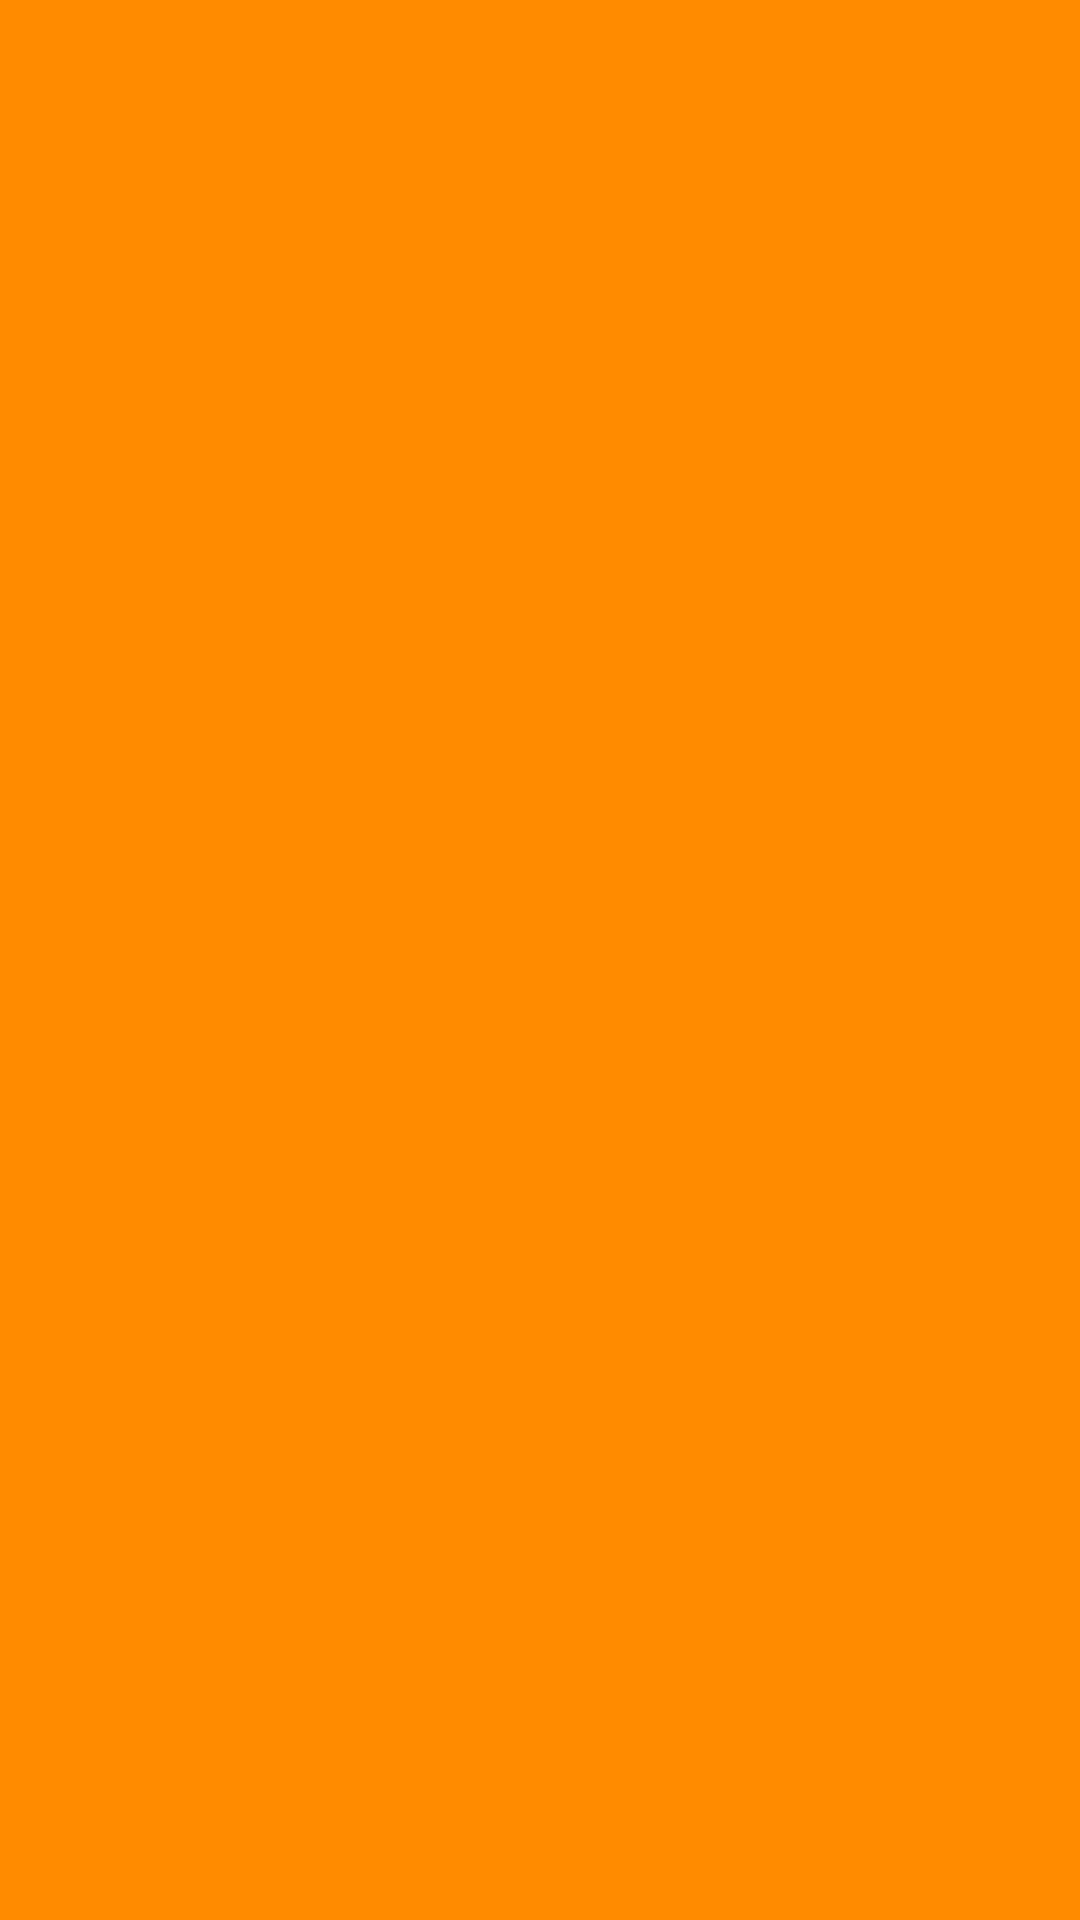 Hình nền màu cam đậm 1080x1920 là sự lựa chọn hoàn hảo cho những ai đam mê màu cam và yêu thích các thiết bị nhỏ gọn. Với độ phân giải cao, hình nền này sẽ khiến cho mọi hình ảnh trông sống động và rõ nét hơn bao giờ hết. Hãy xem ngay hình ảnh liên quan để cảm nhận được sức hút của màu cam!